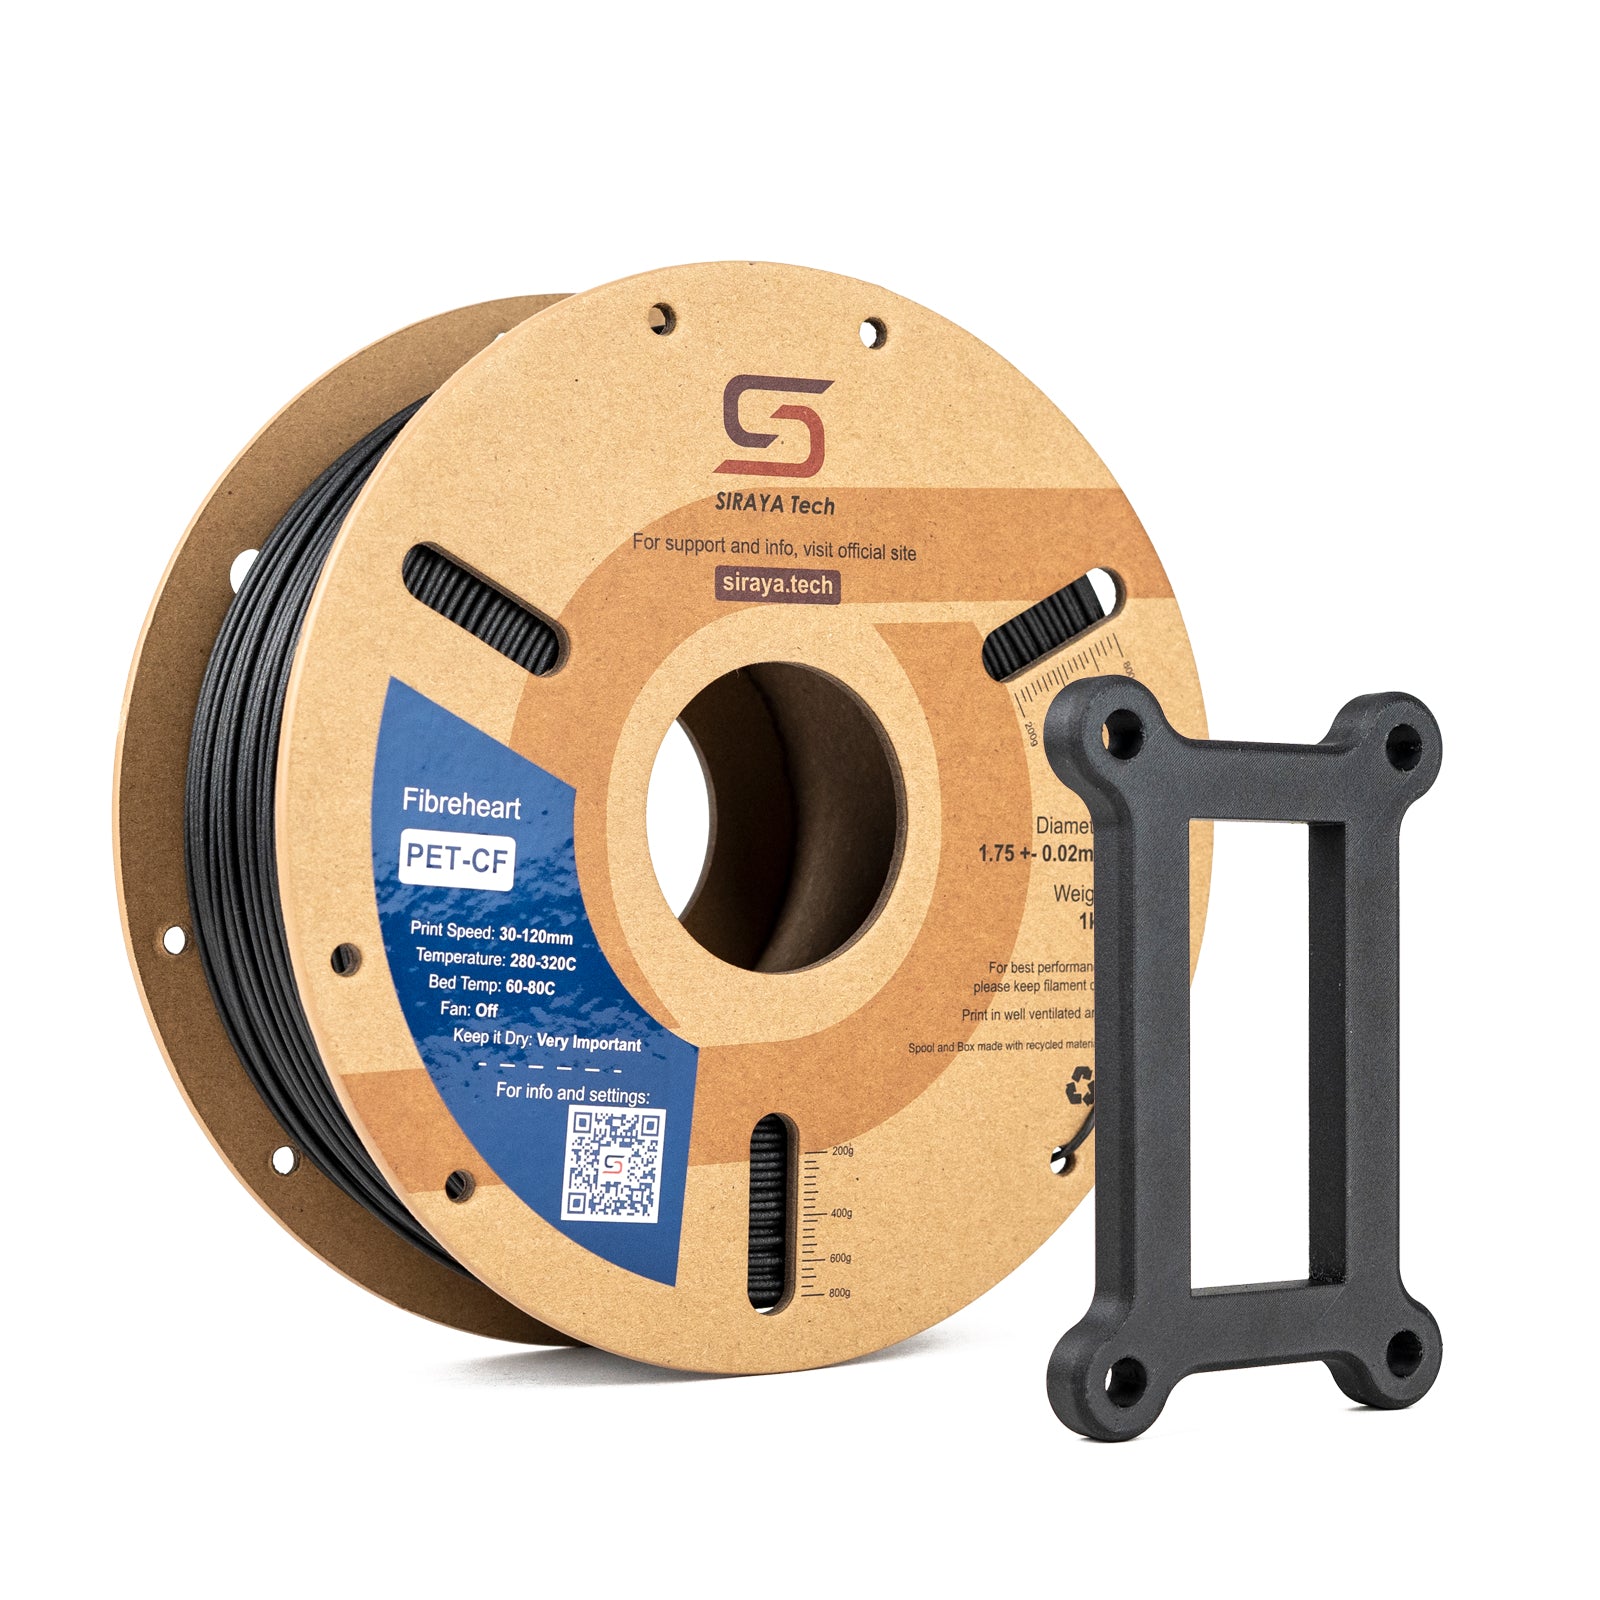 Siraya Tech Fibreheart PET-CF Filament